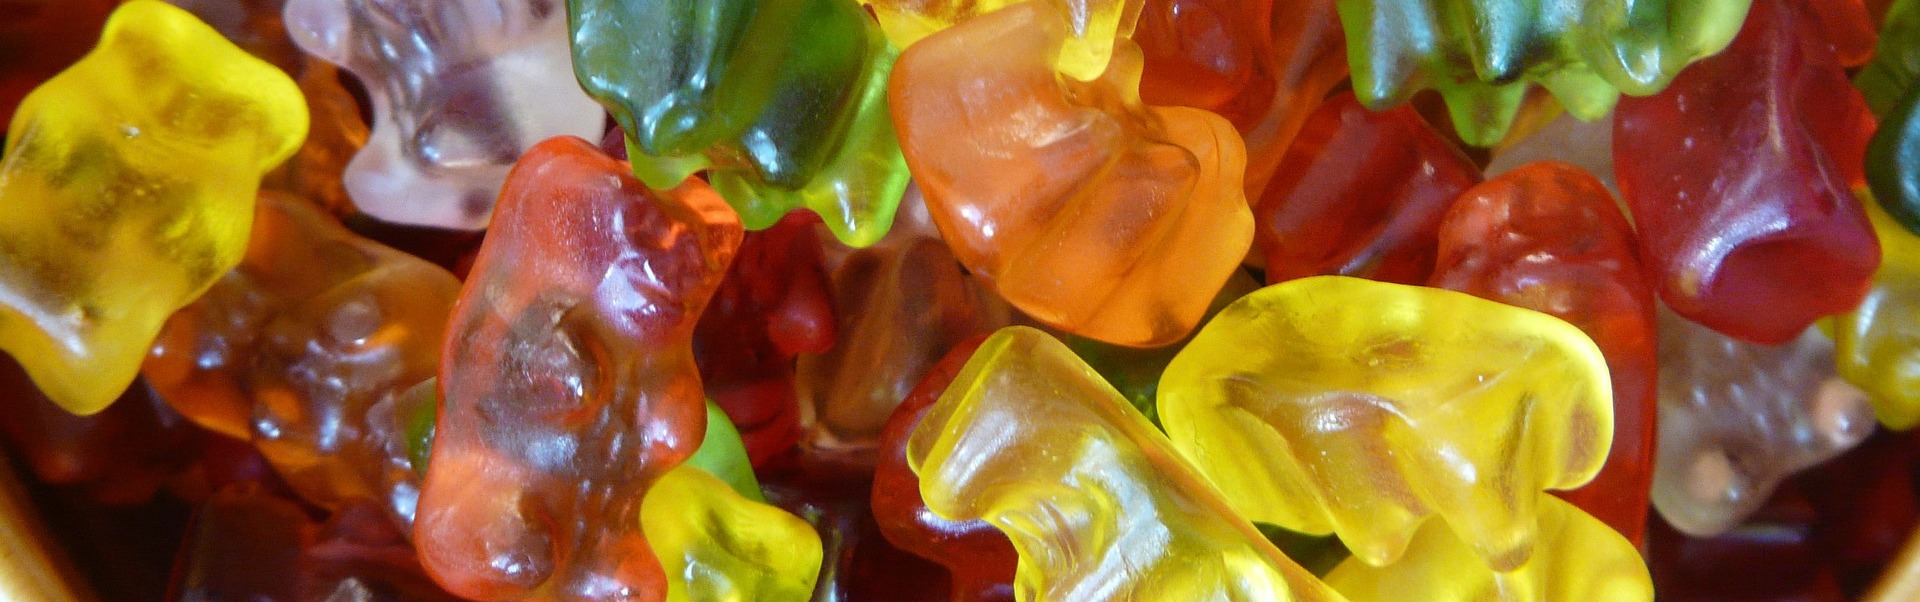 Gummi bears 8464 1920